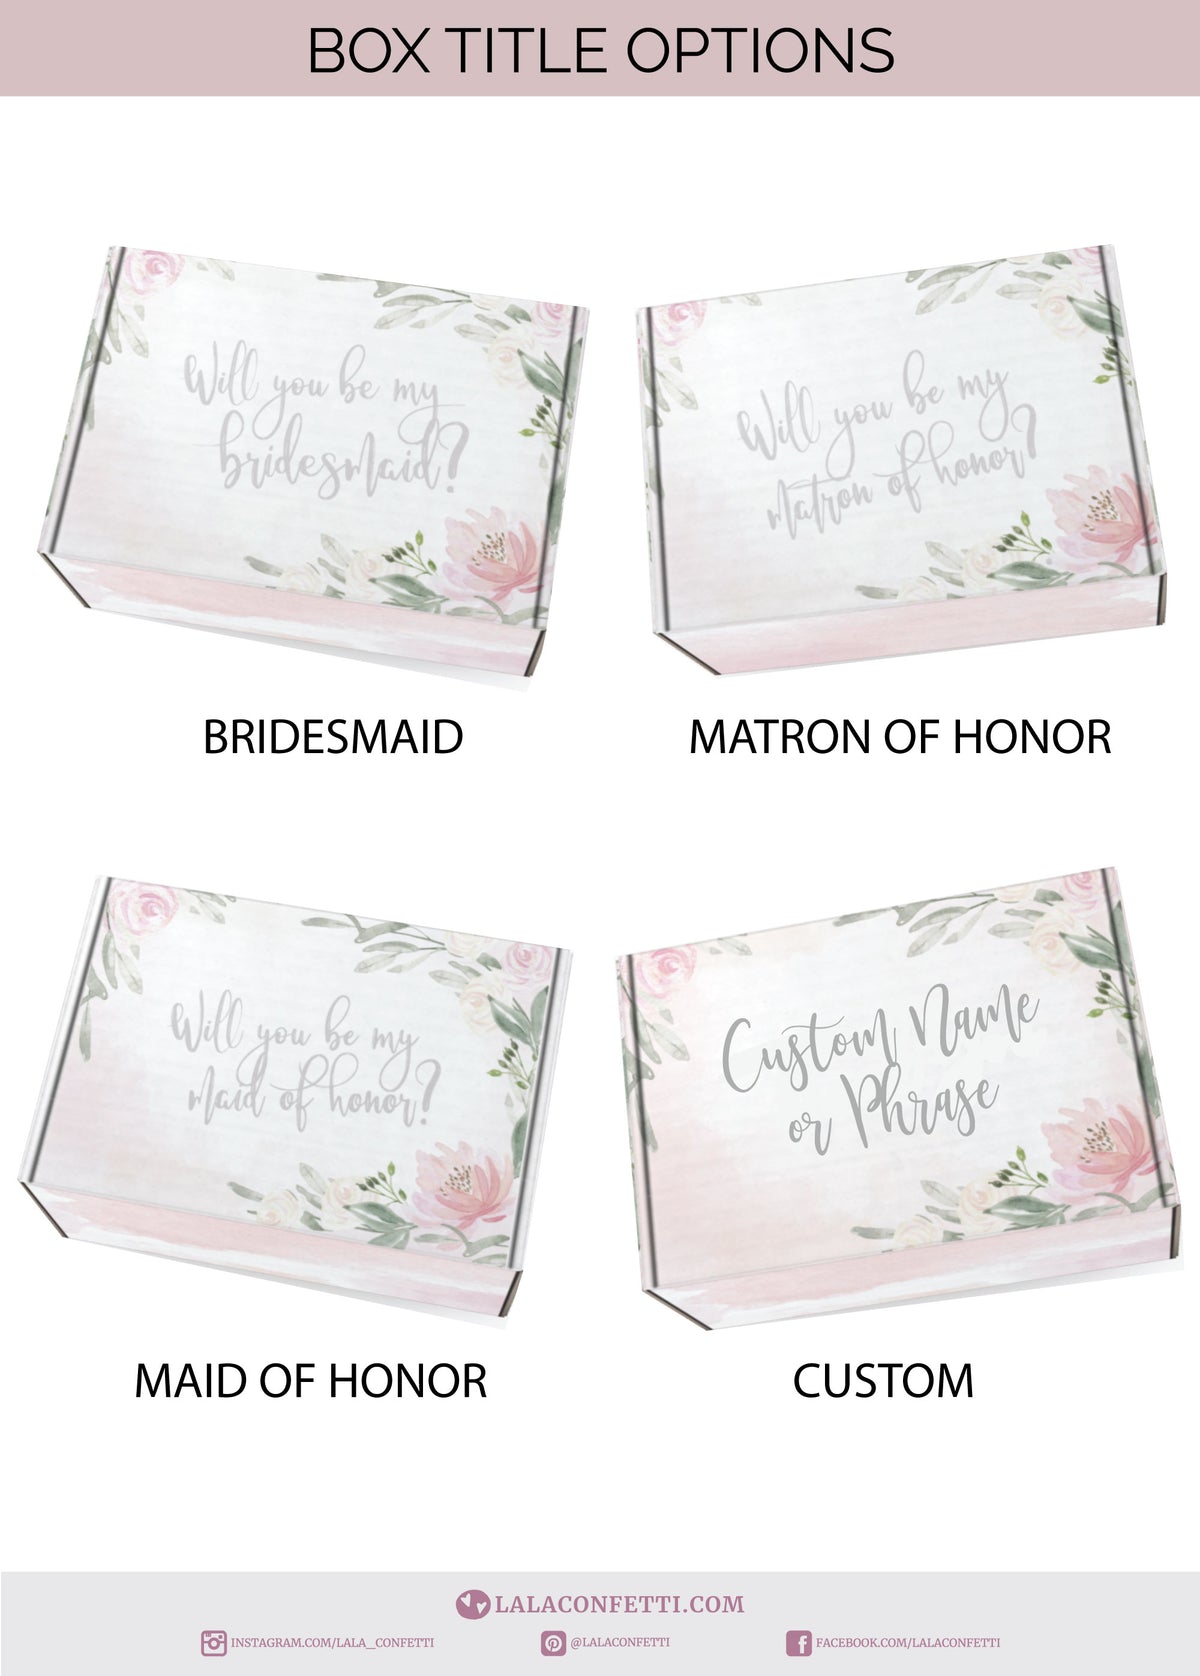 Bridesmaid Proposal Box - Basic Box